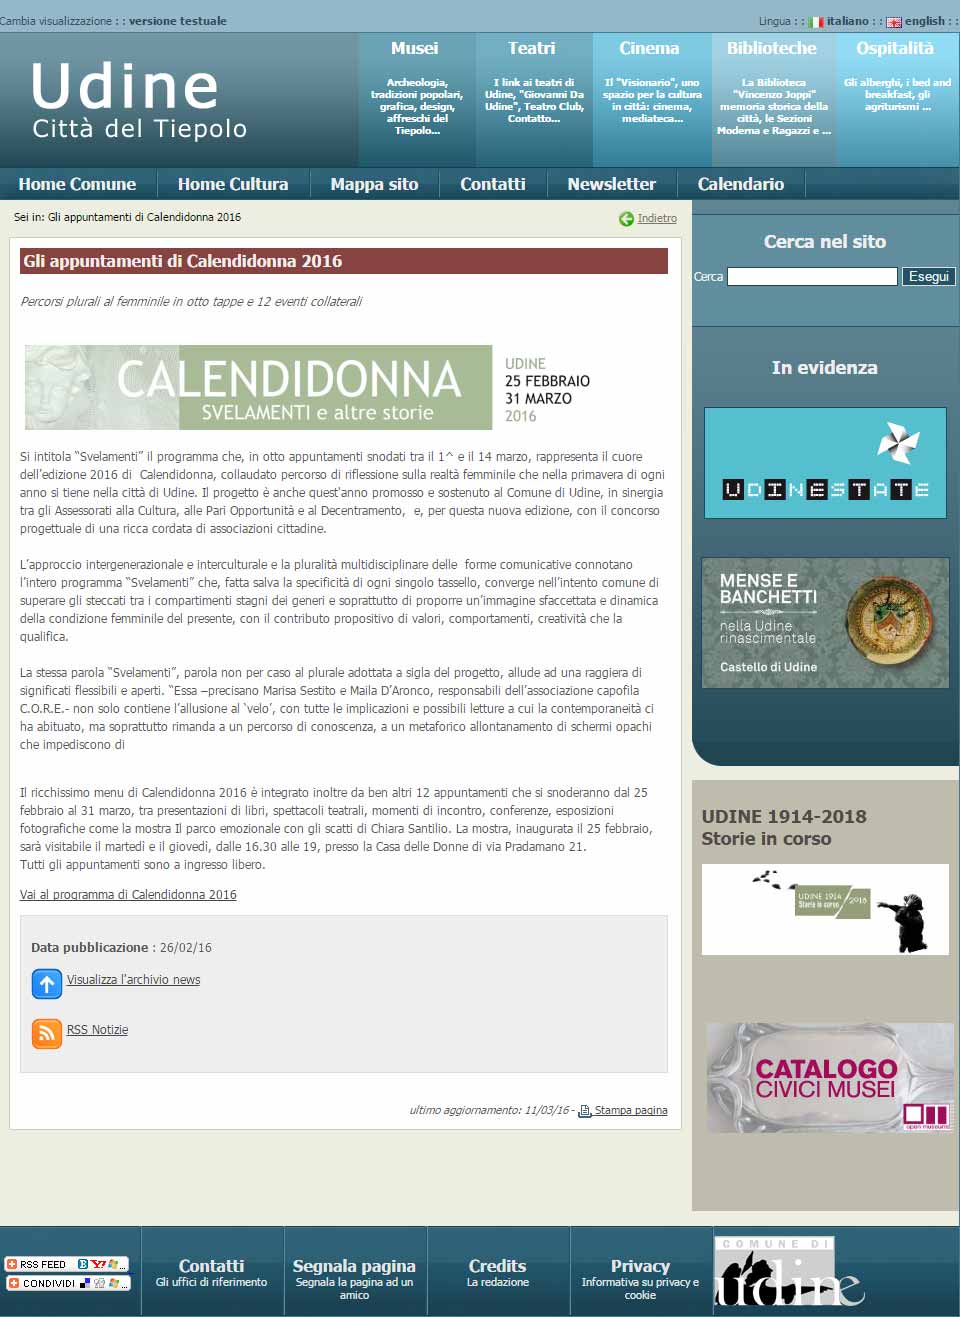 Udine Cultura: Calendidonna 2016 – Appuntamenti